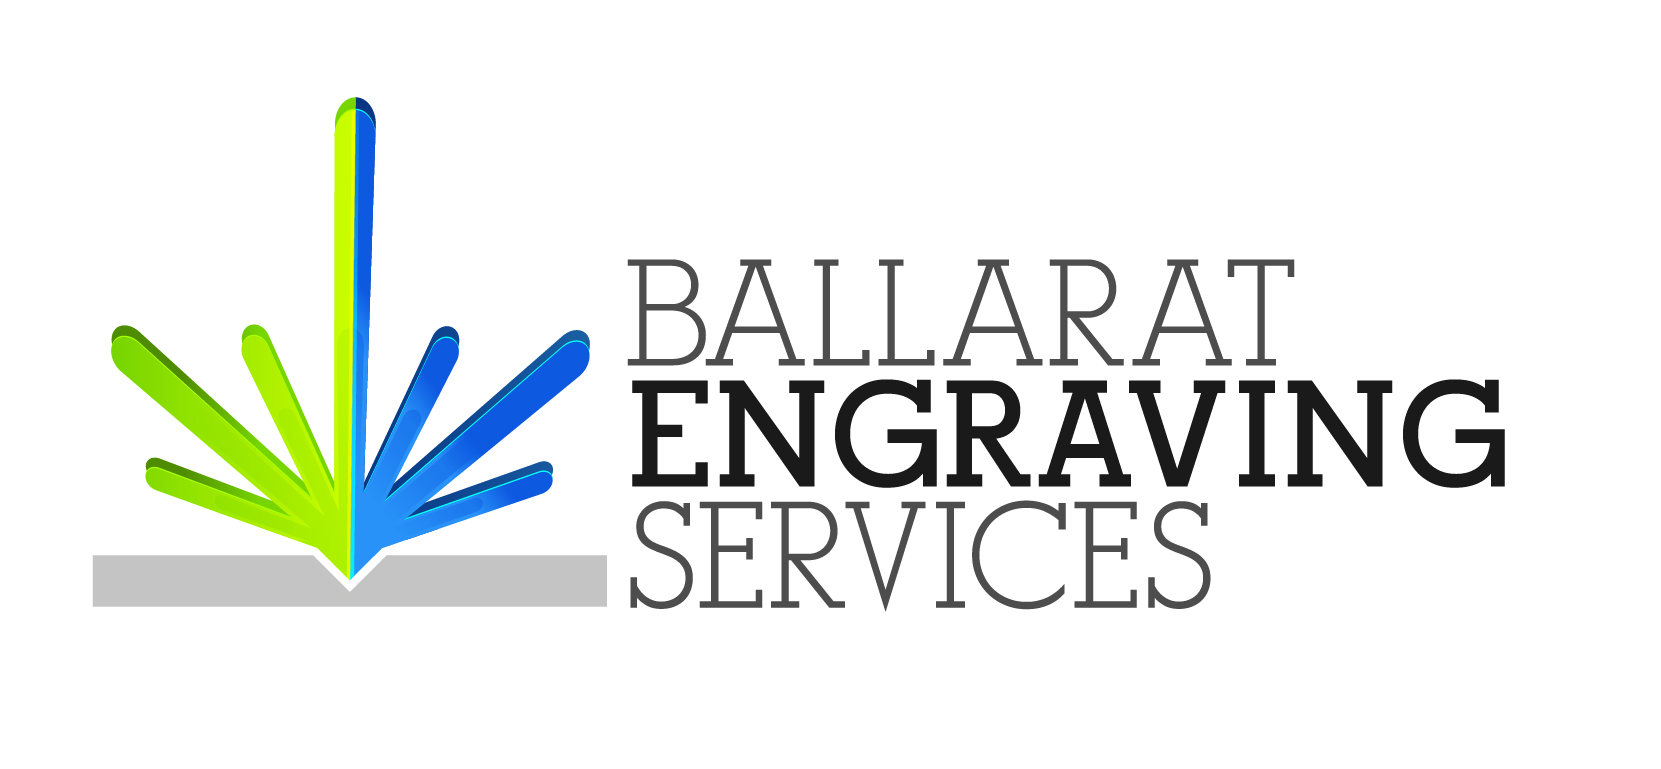 Company logo of Ballarat Engraving Services